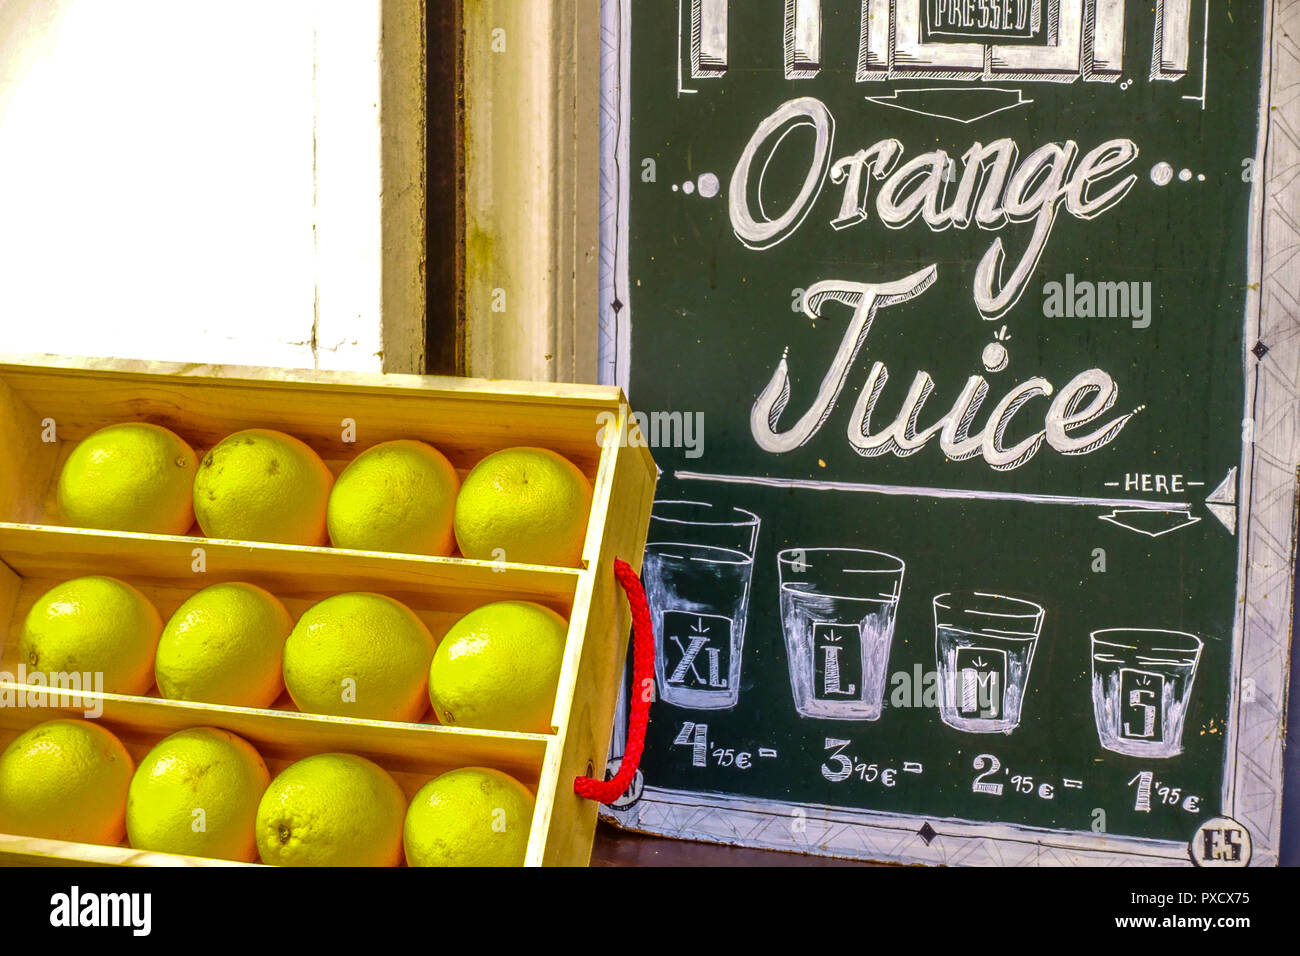 Palma de Mallorca, Orange Juice, street offer, Spain Stock Photo